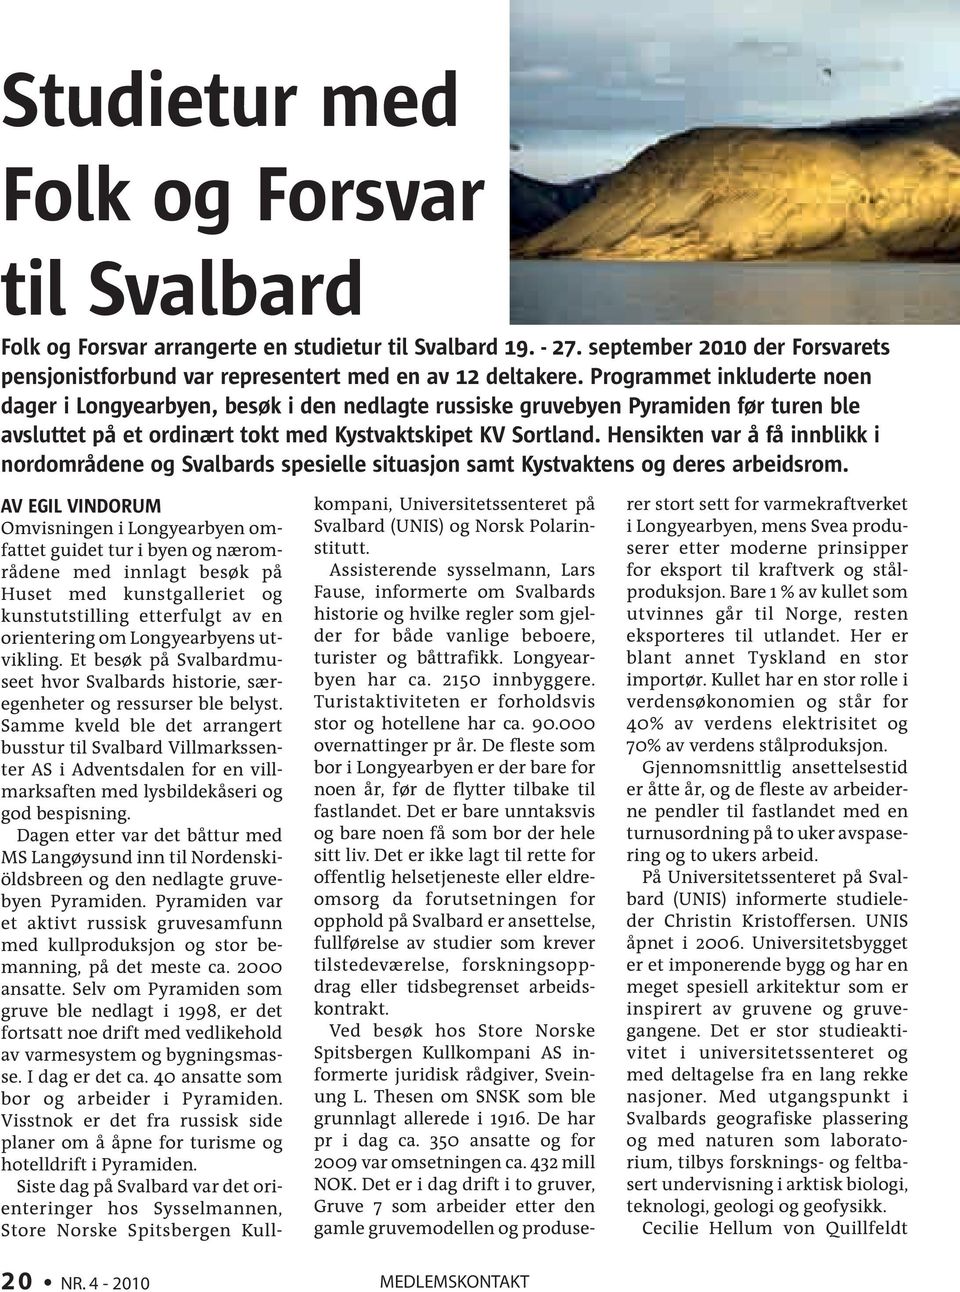 Hensikten var å få innblikk i nordområdene og Svalbards spesielle situasjon samt Kystvaktens og deres arbeidsrom.